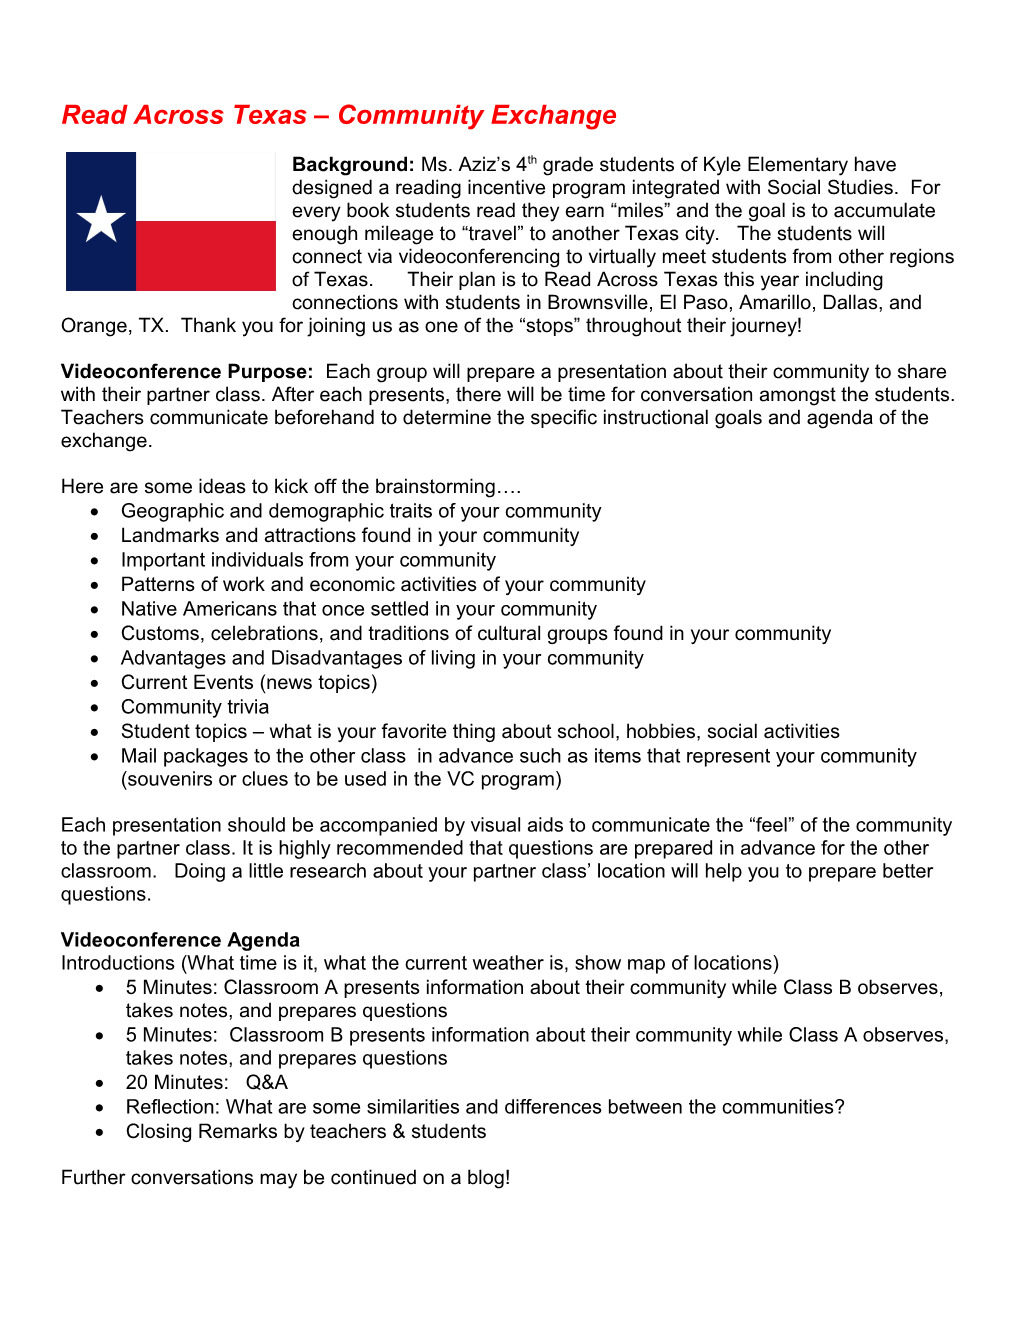 Read Across Texas Community Exchange